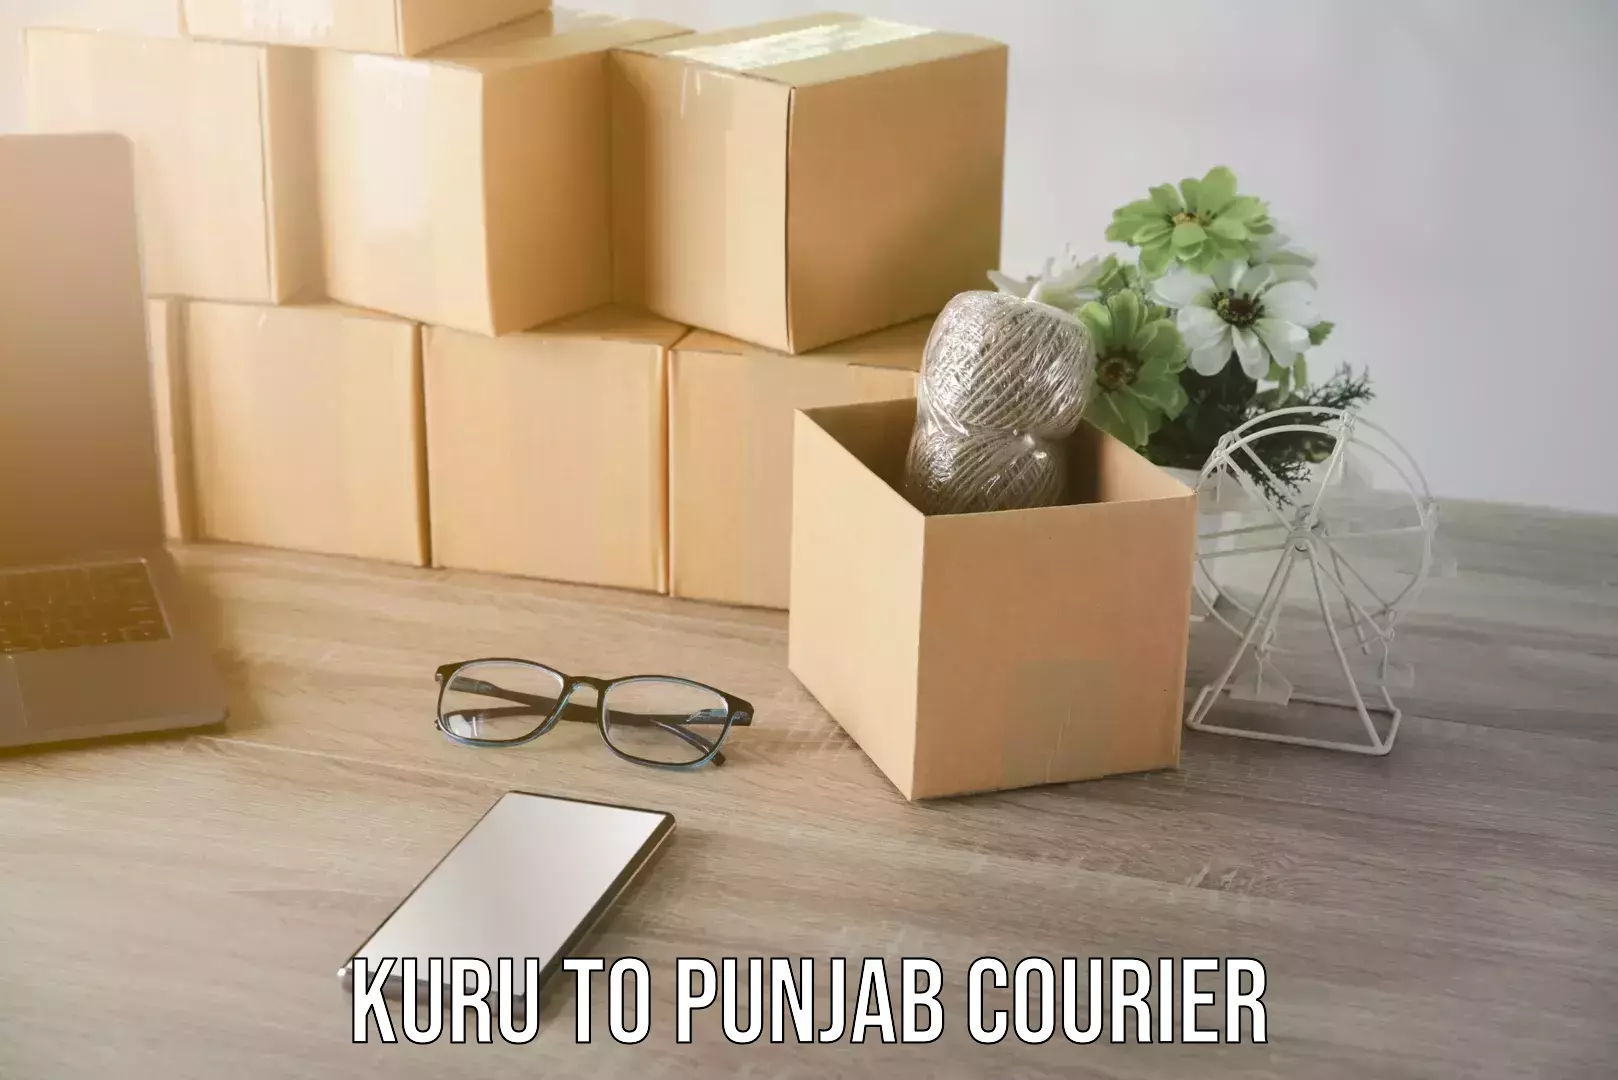 Skilled household transport Kuru to Punjab